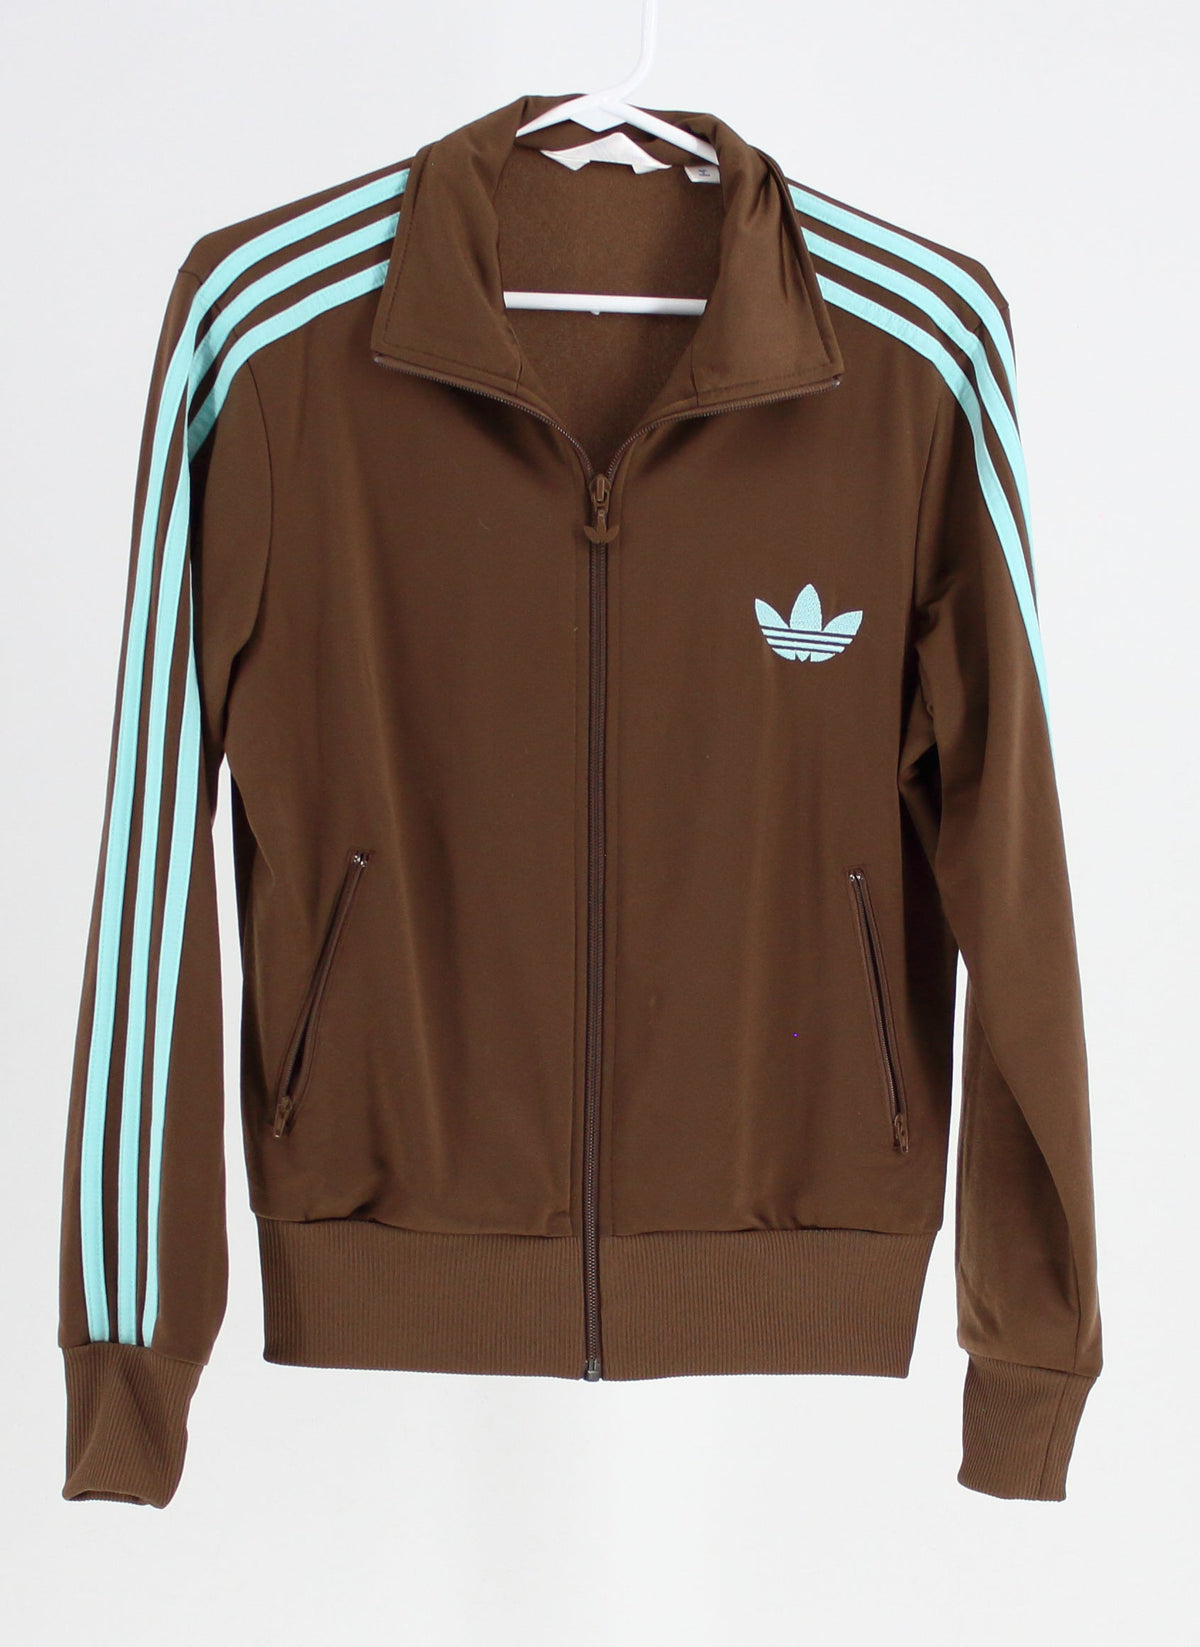 Adidas Brown and Teal Zip Athletic Jacket